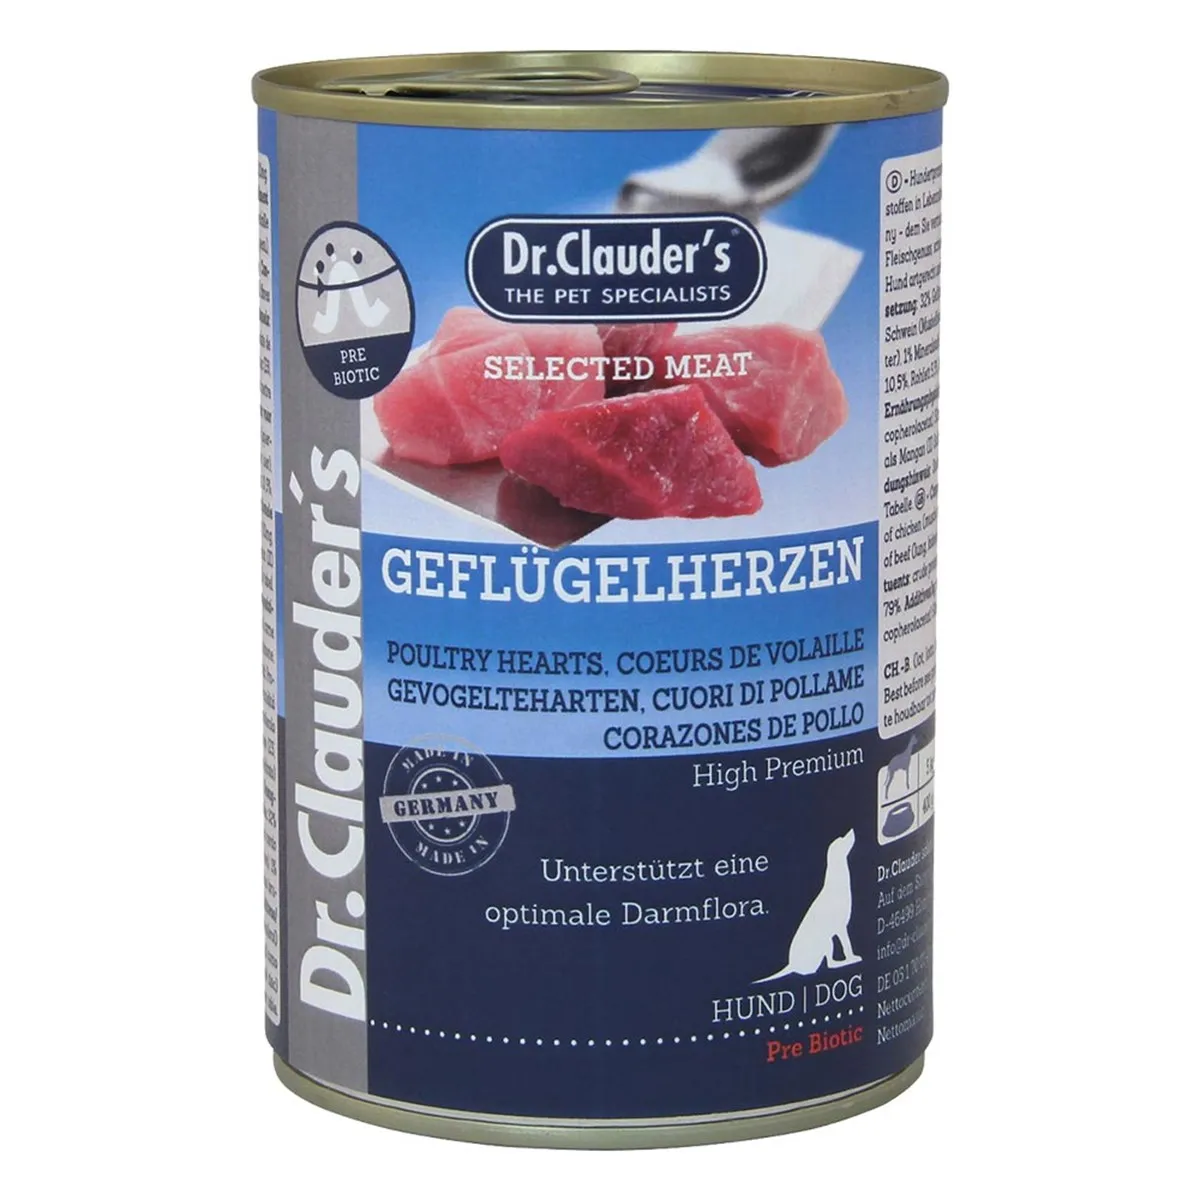 Dr.Clauder's Selected Meat Geflügelherzen /Pre Biotics/ - Консервирана храна за кучета с пилешки сърца, 2 броя х 400 гр.